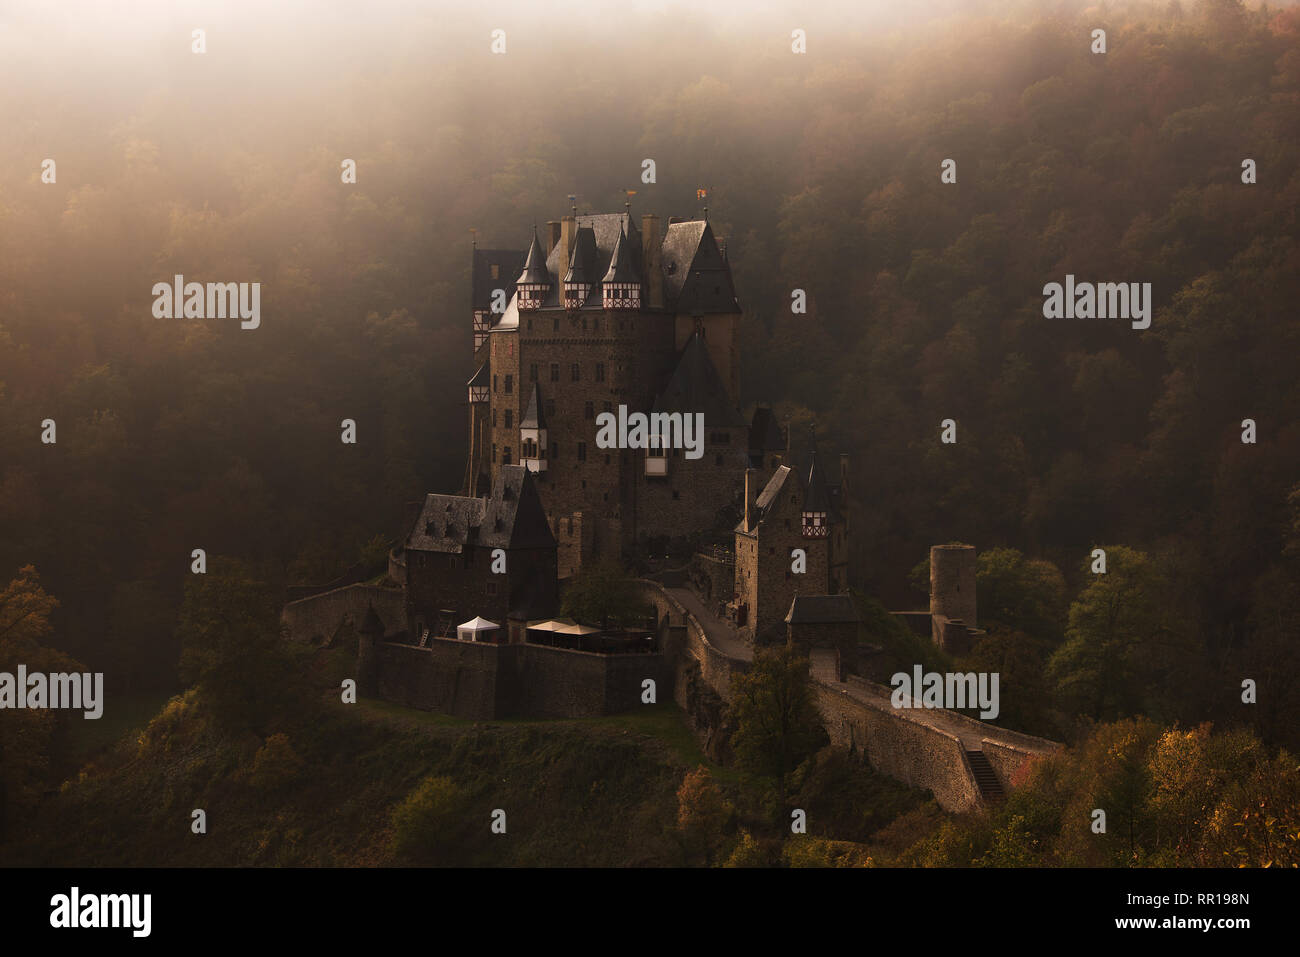 La cité médiévale château Burg Eltz, construit sur un rocher dans une forêt en automne couleurs entouré par le brouillard du matin près de la Moselle en Allemagne, Wierschem. Banque D'Images